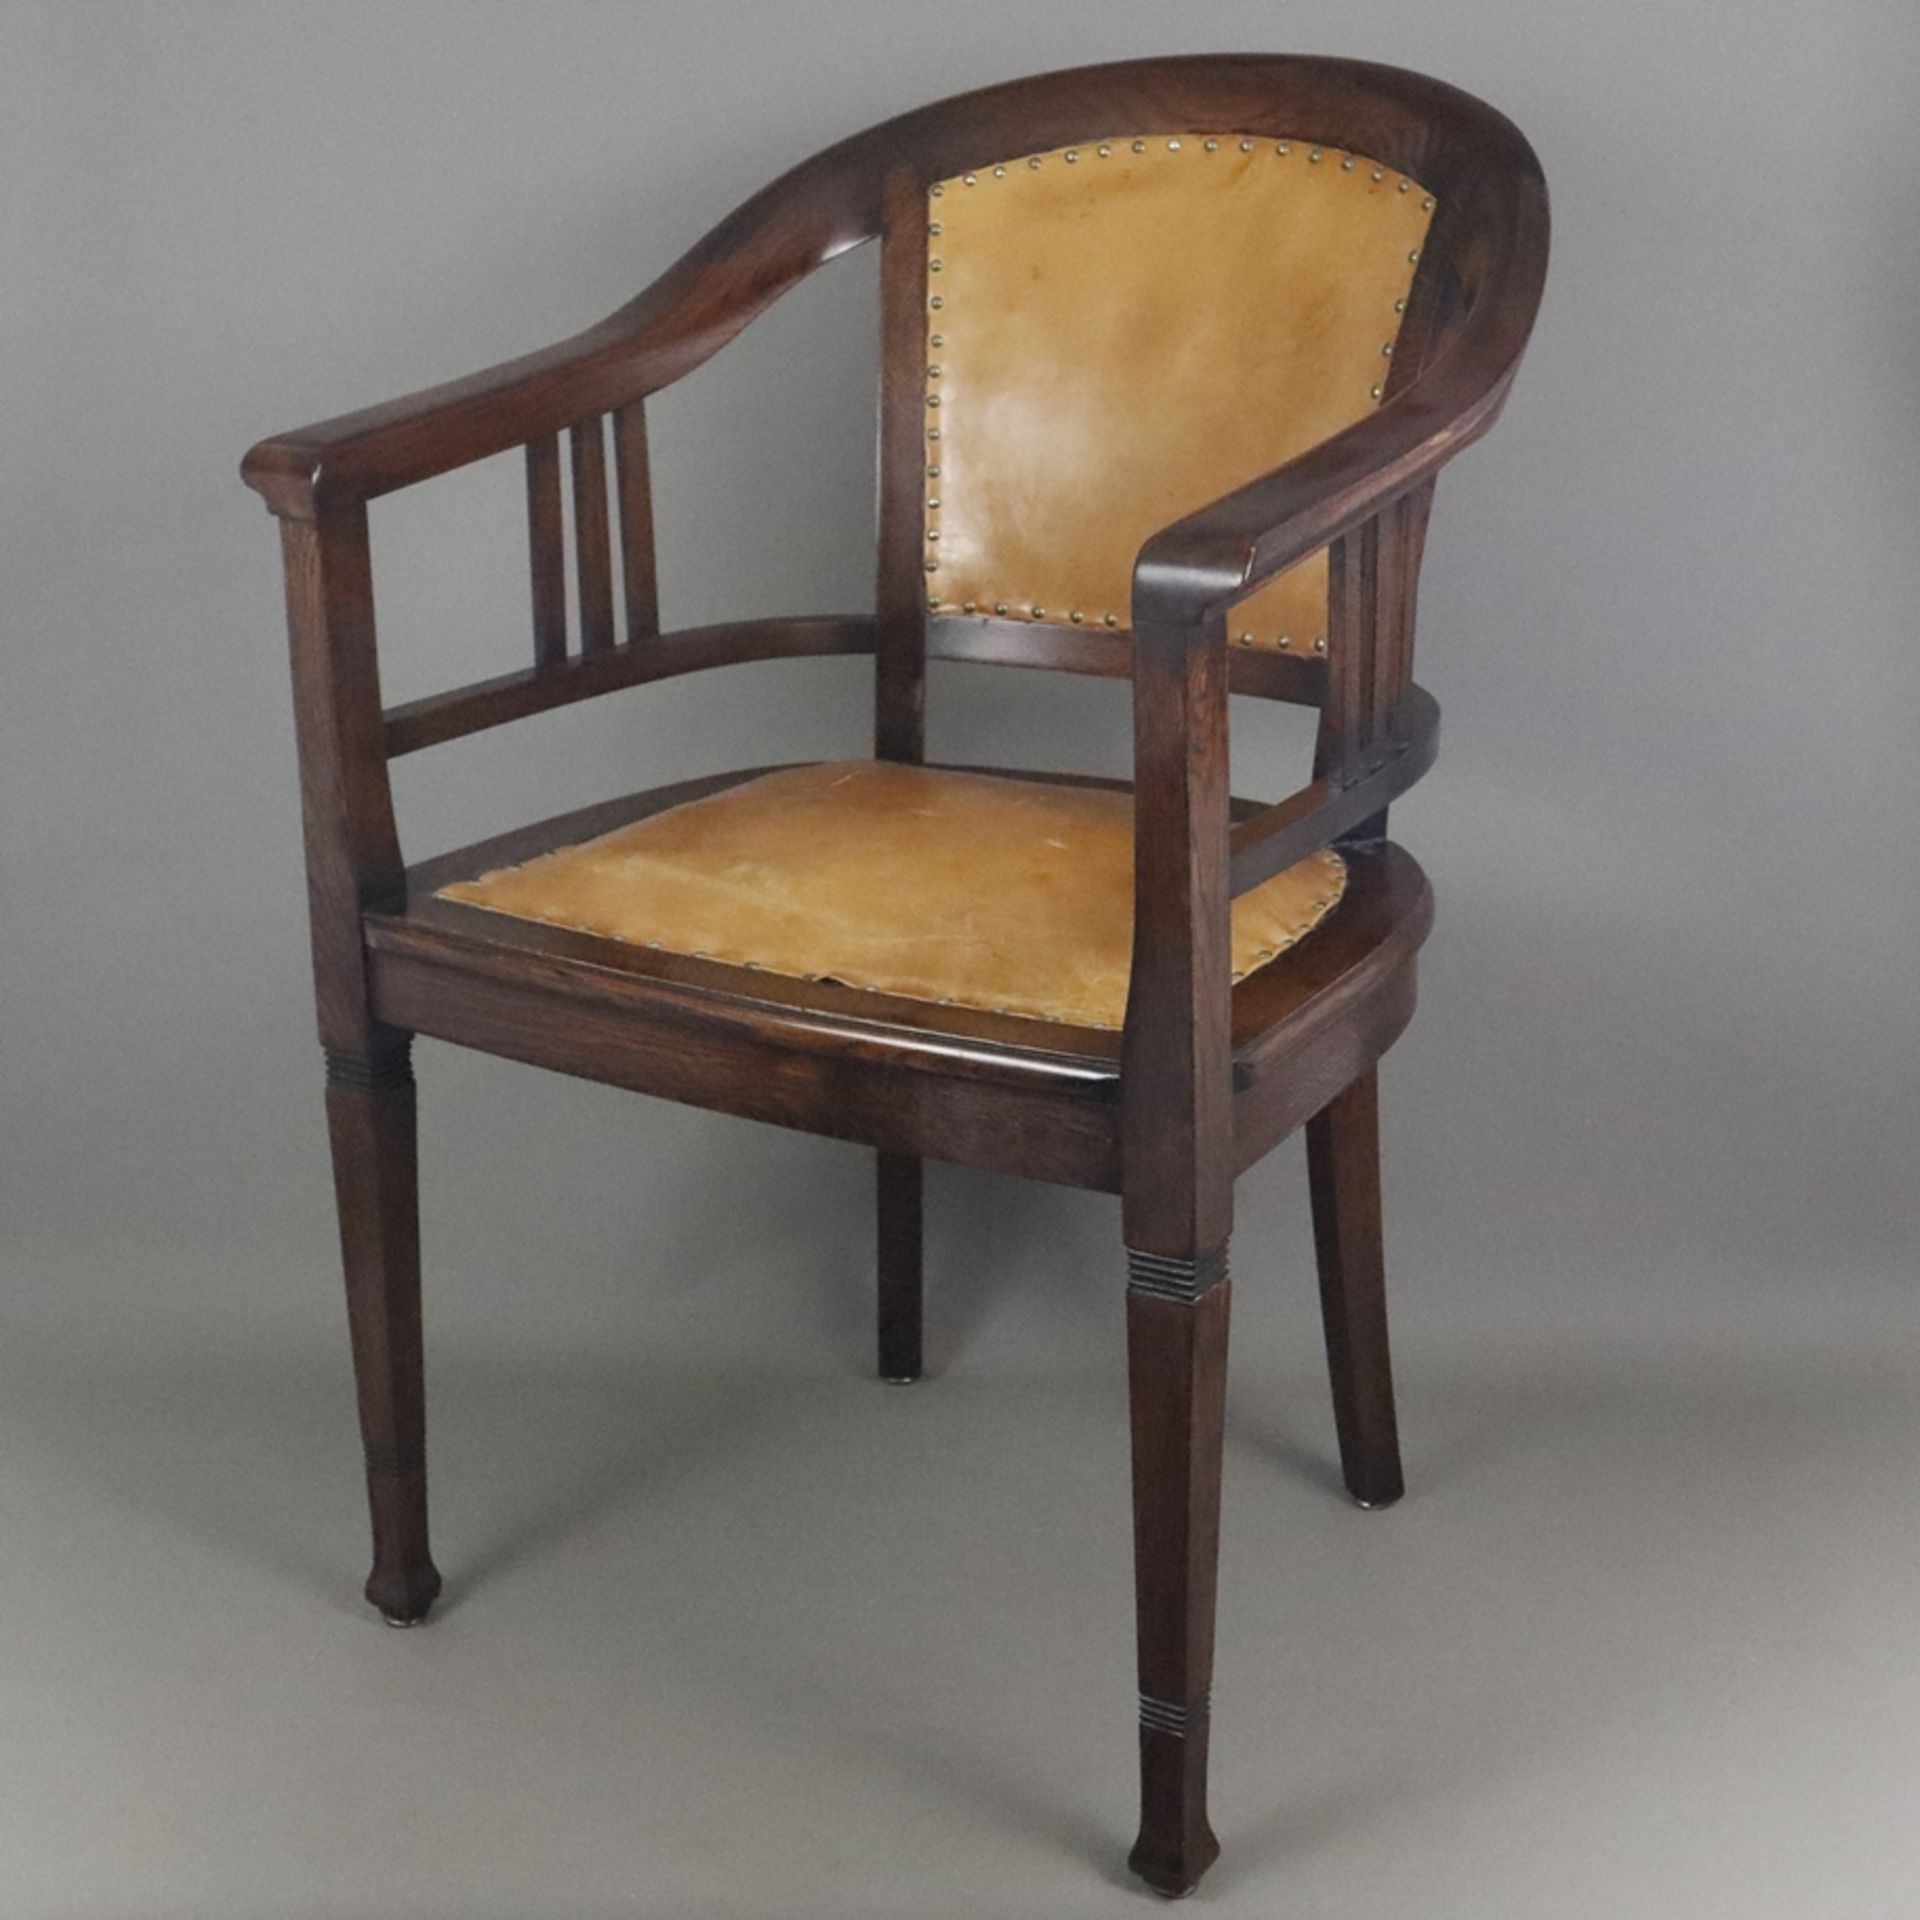 Jugendstil-Armlehnstuhl - um 1910, Holz, dunkel gebeizt, halbrunder Armlehnstuhl mit Vierkantbeinen - Bild 2 aus 12